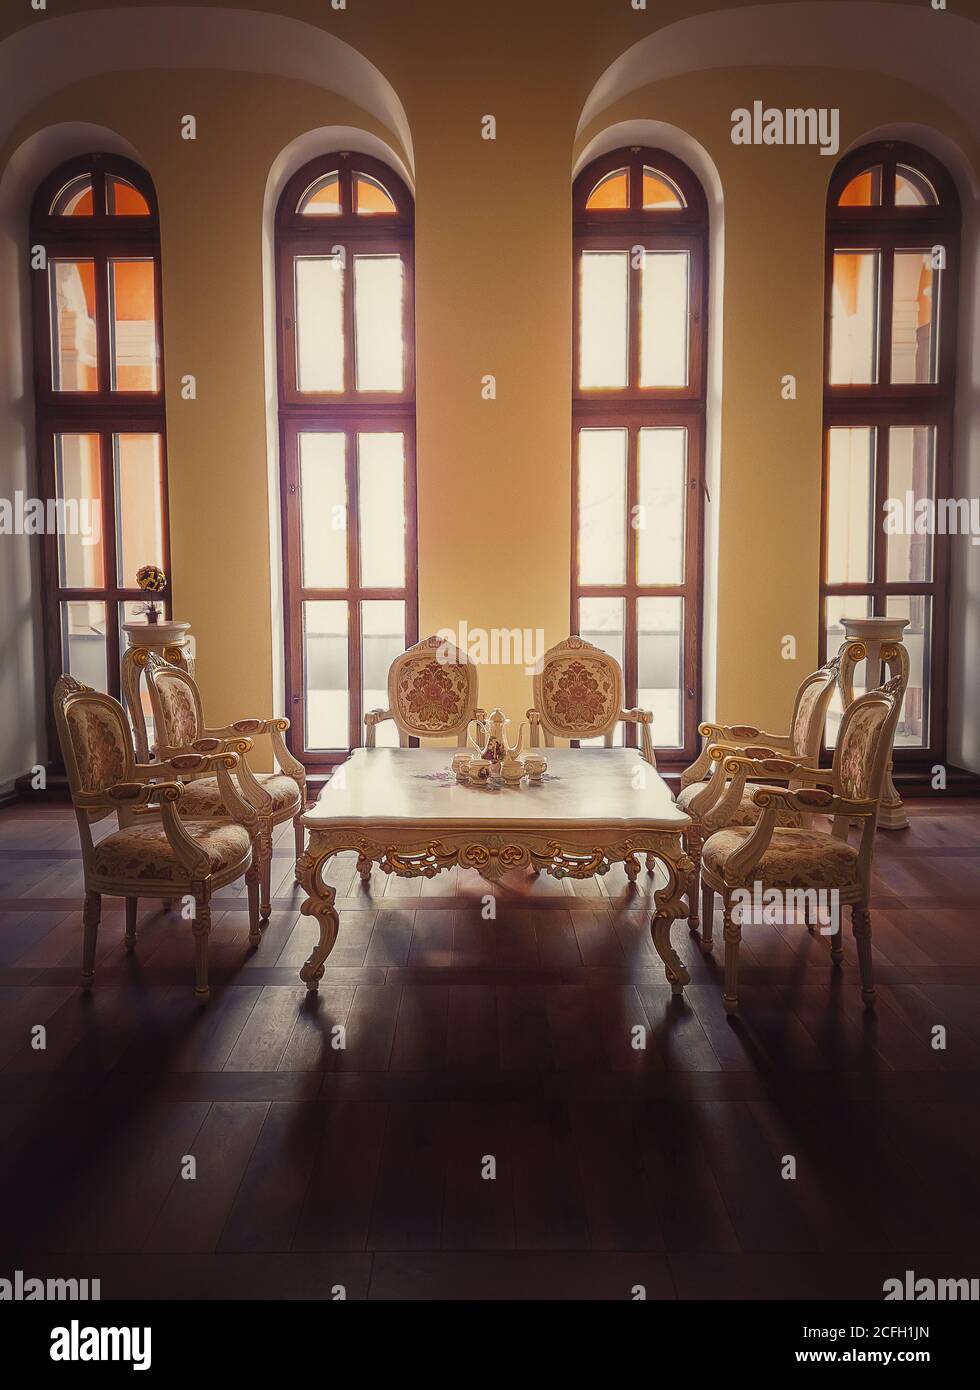 Ancienne salle à manger royale, mobilier de style médiéval avec chaises dorées et table près des fenêtres voûtées. Chambre d'accueil de luxe en arrière-plan, ancienne Banque D'Images